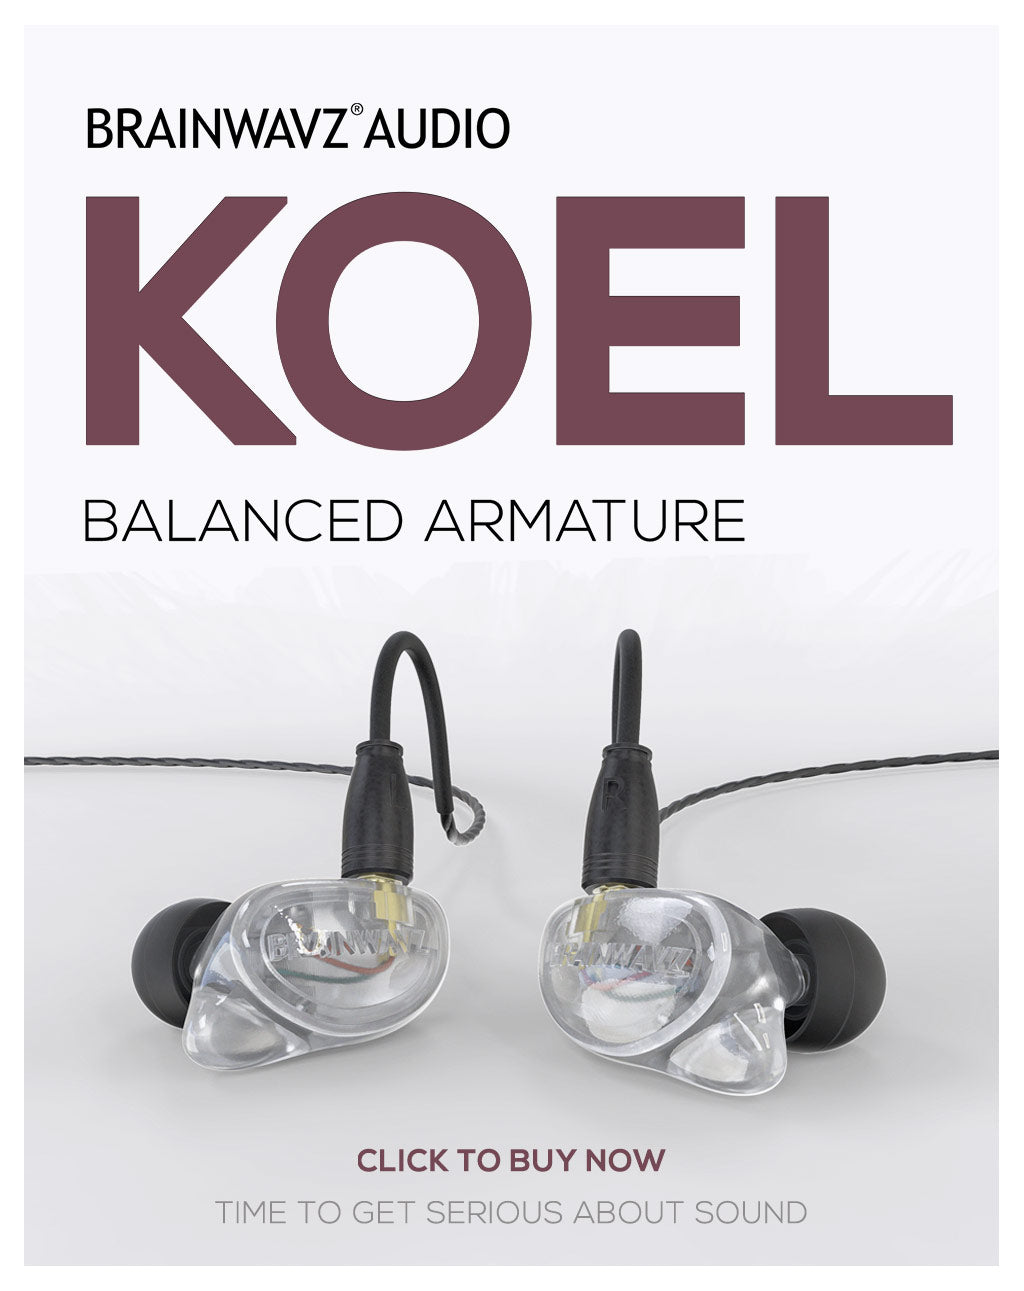 Brainwavz Koel earphones